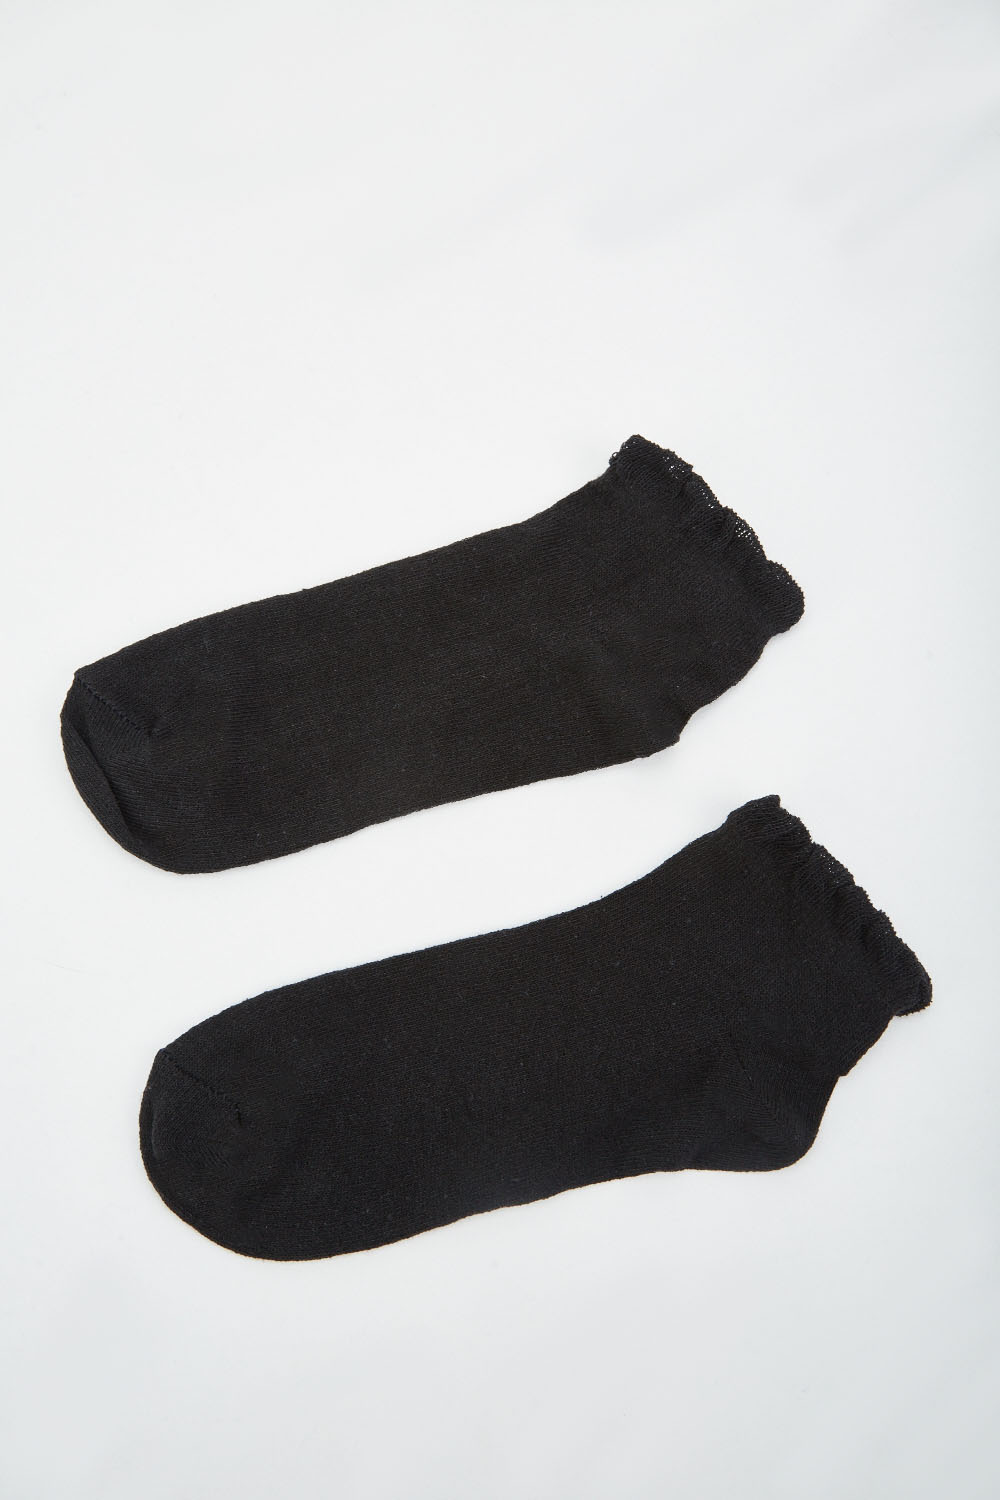 12 Pairs Of Plain Black Socks - Just $6